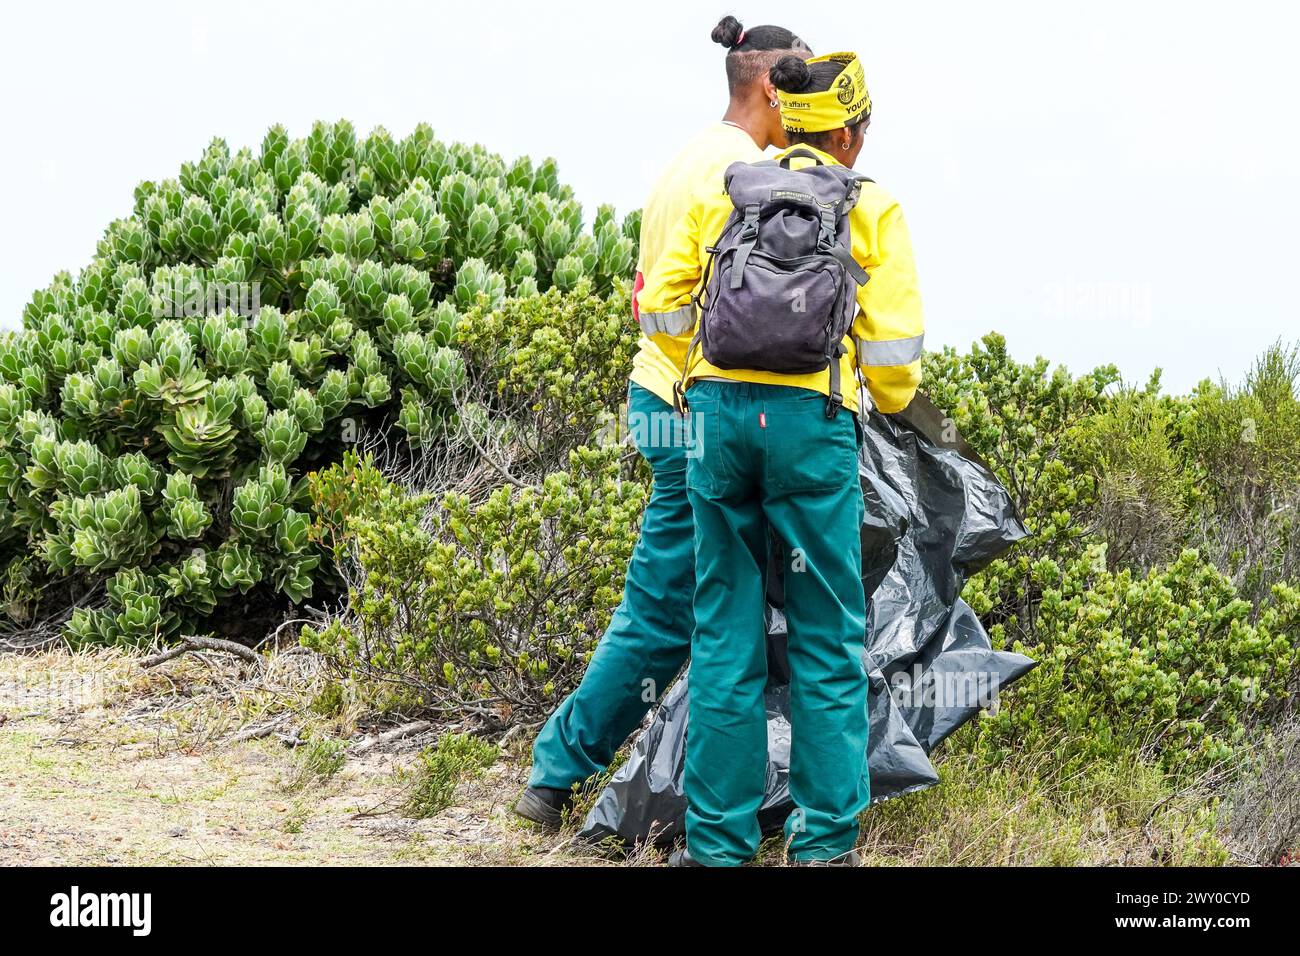 Mitarbeiter, Mitarbeiter im Table Mountain-Nationalpark reinigen in einer Umweltregion von Western Cape, Südafrika Konzept Ökologie und Umwelt Stockfoto